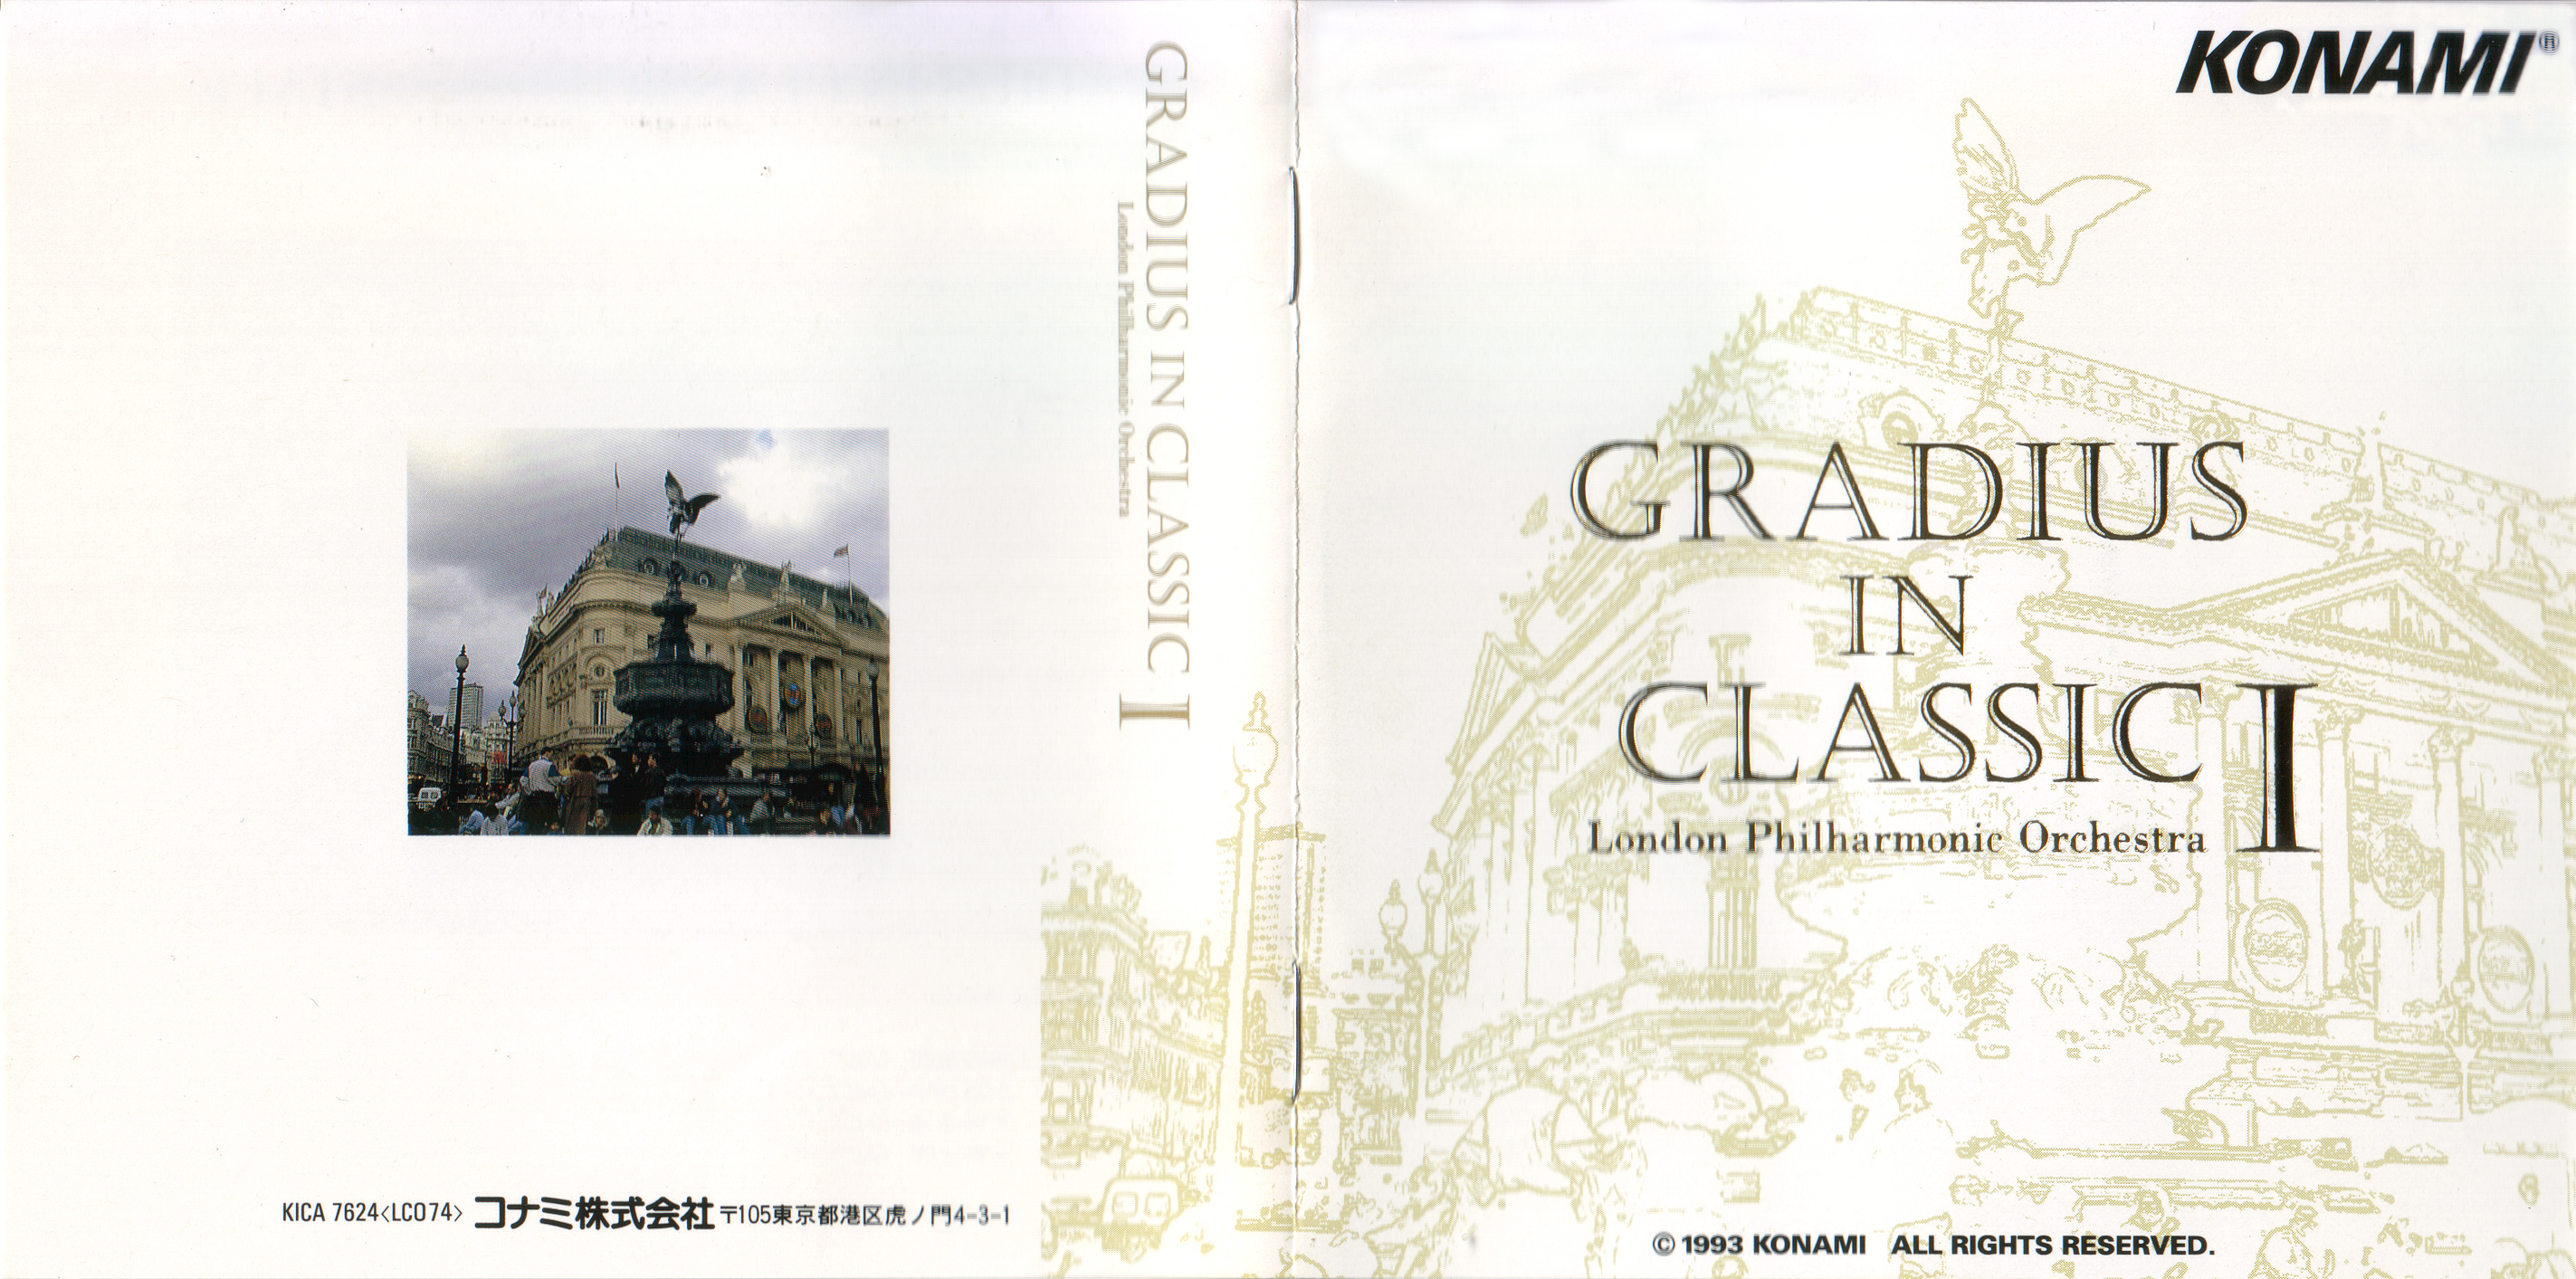 GRADIUS IN CLASSIC I (1993) MP3 - Download GRADIUS IN CLASSIC I (1993)  Soundtracks for FREE!